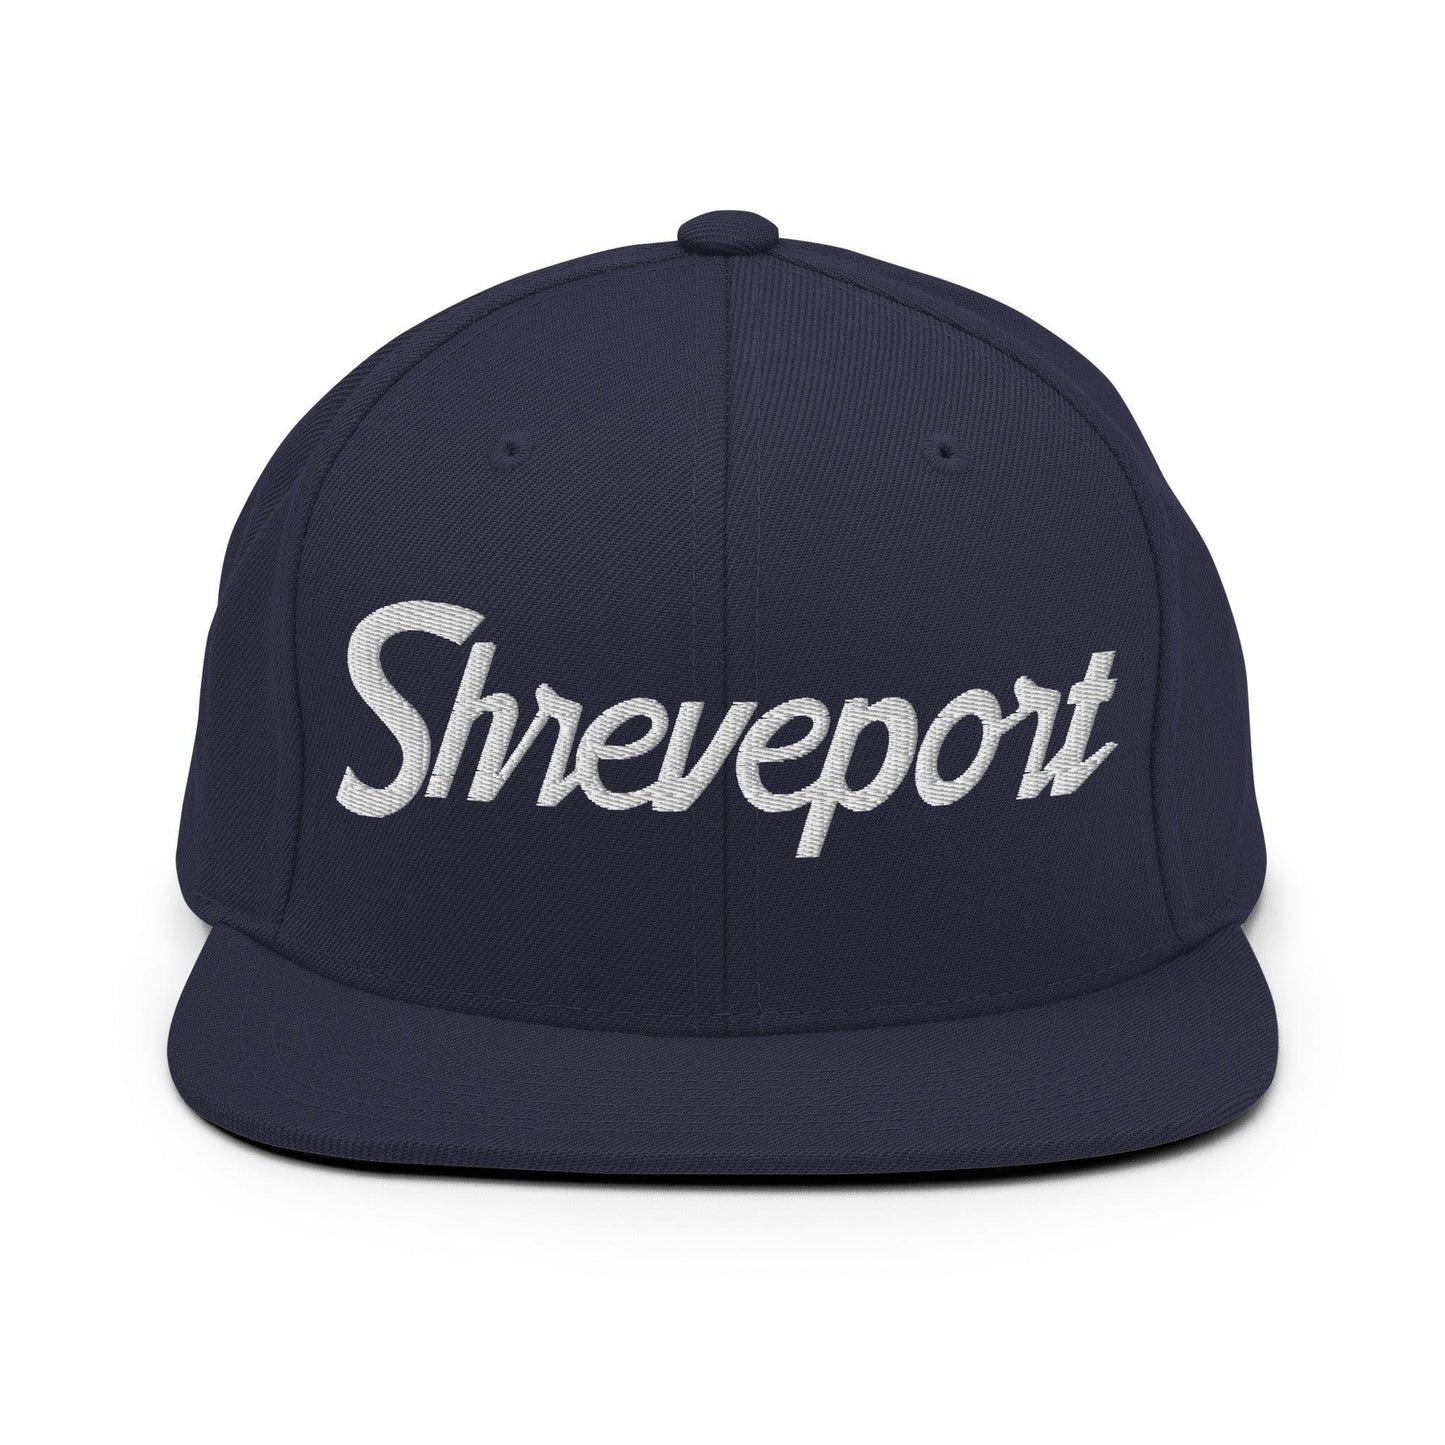 Shreveport Script Snapback Hat Navy